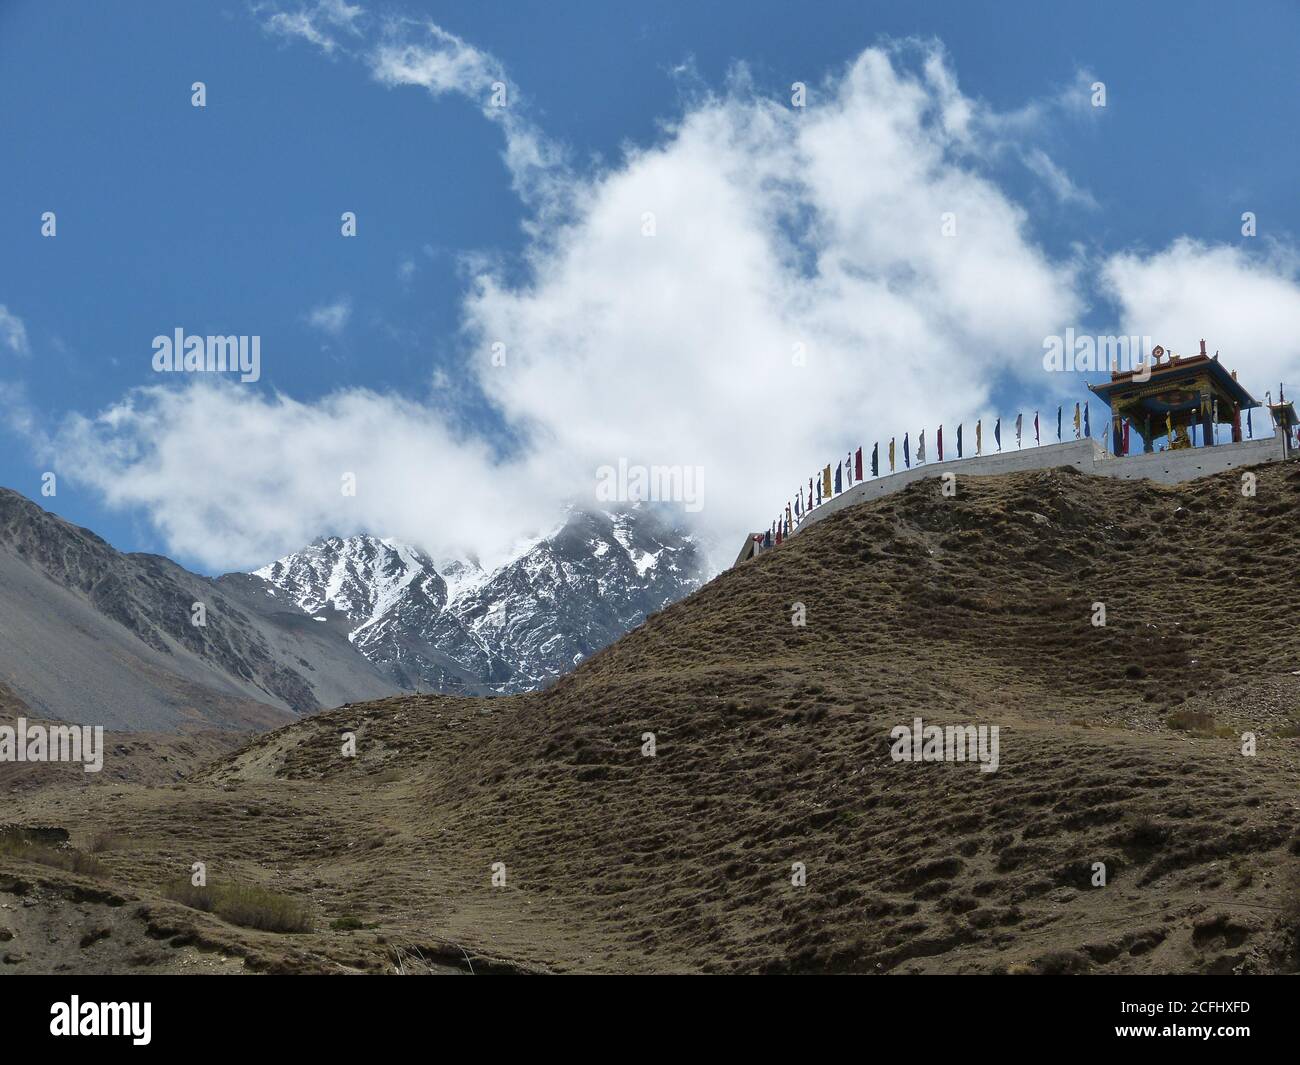 Des montagnes himalayens dans le quartier de Mustang, au Népal. Monastère bouddhiste Muktinath. Paysage de montagne tibétain incroyable. L'Asie fascinante. Banque D'Images